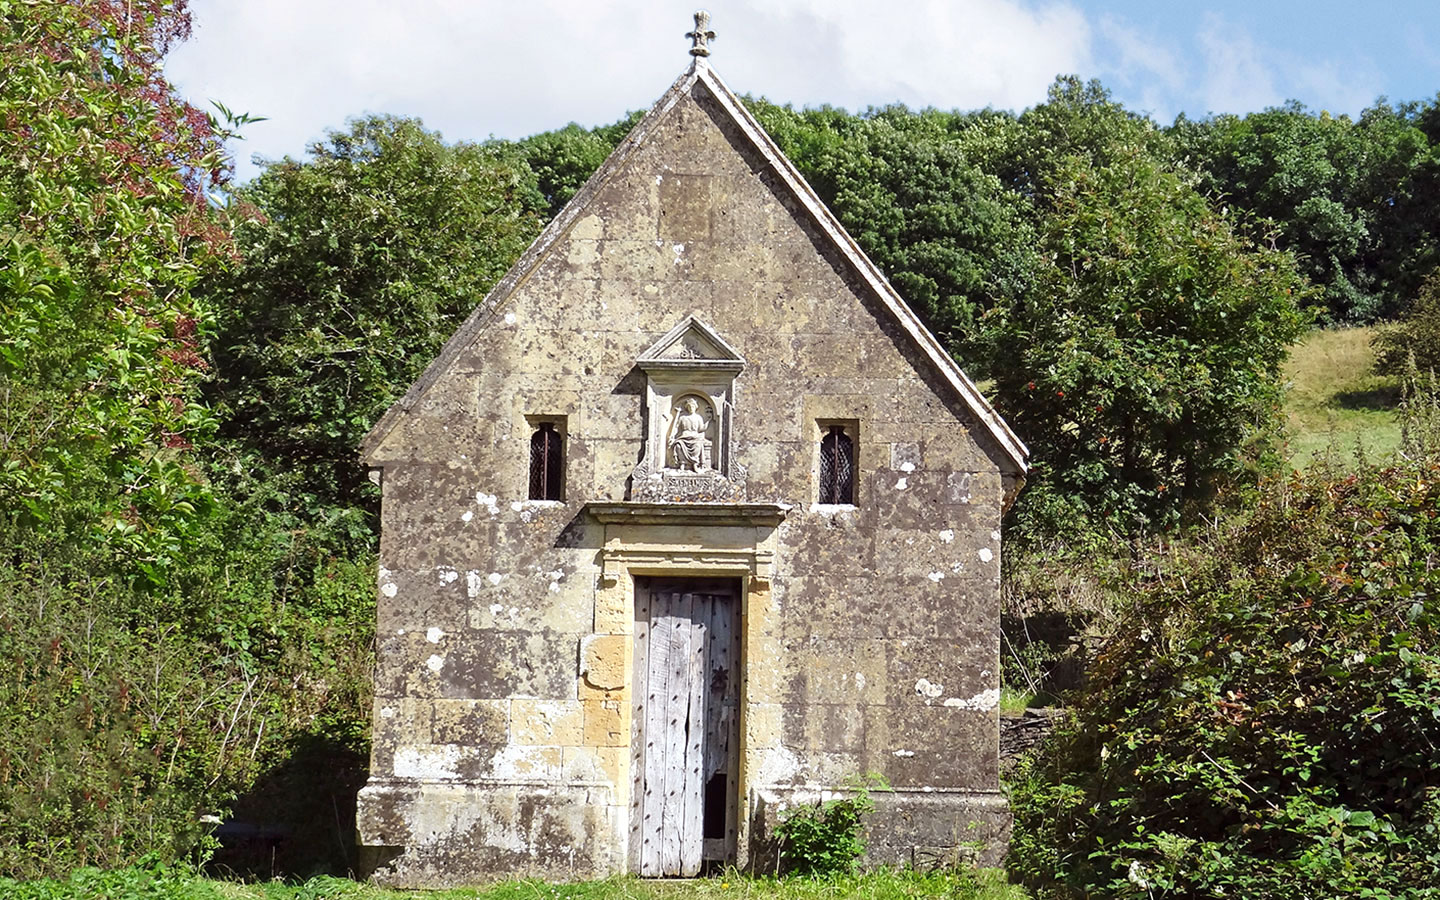 St Kenelm's Wel, pilgrimage site near Winchcombe